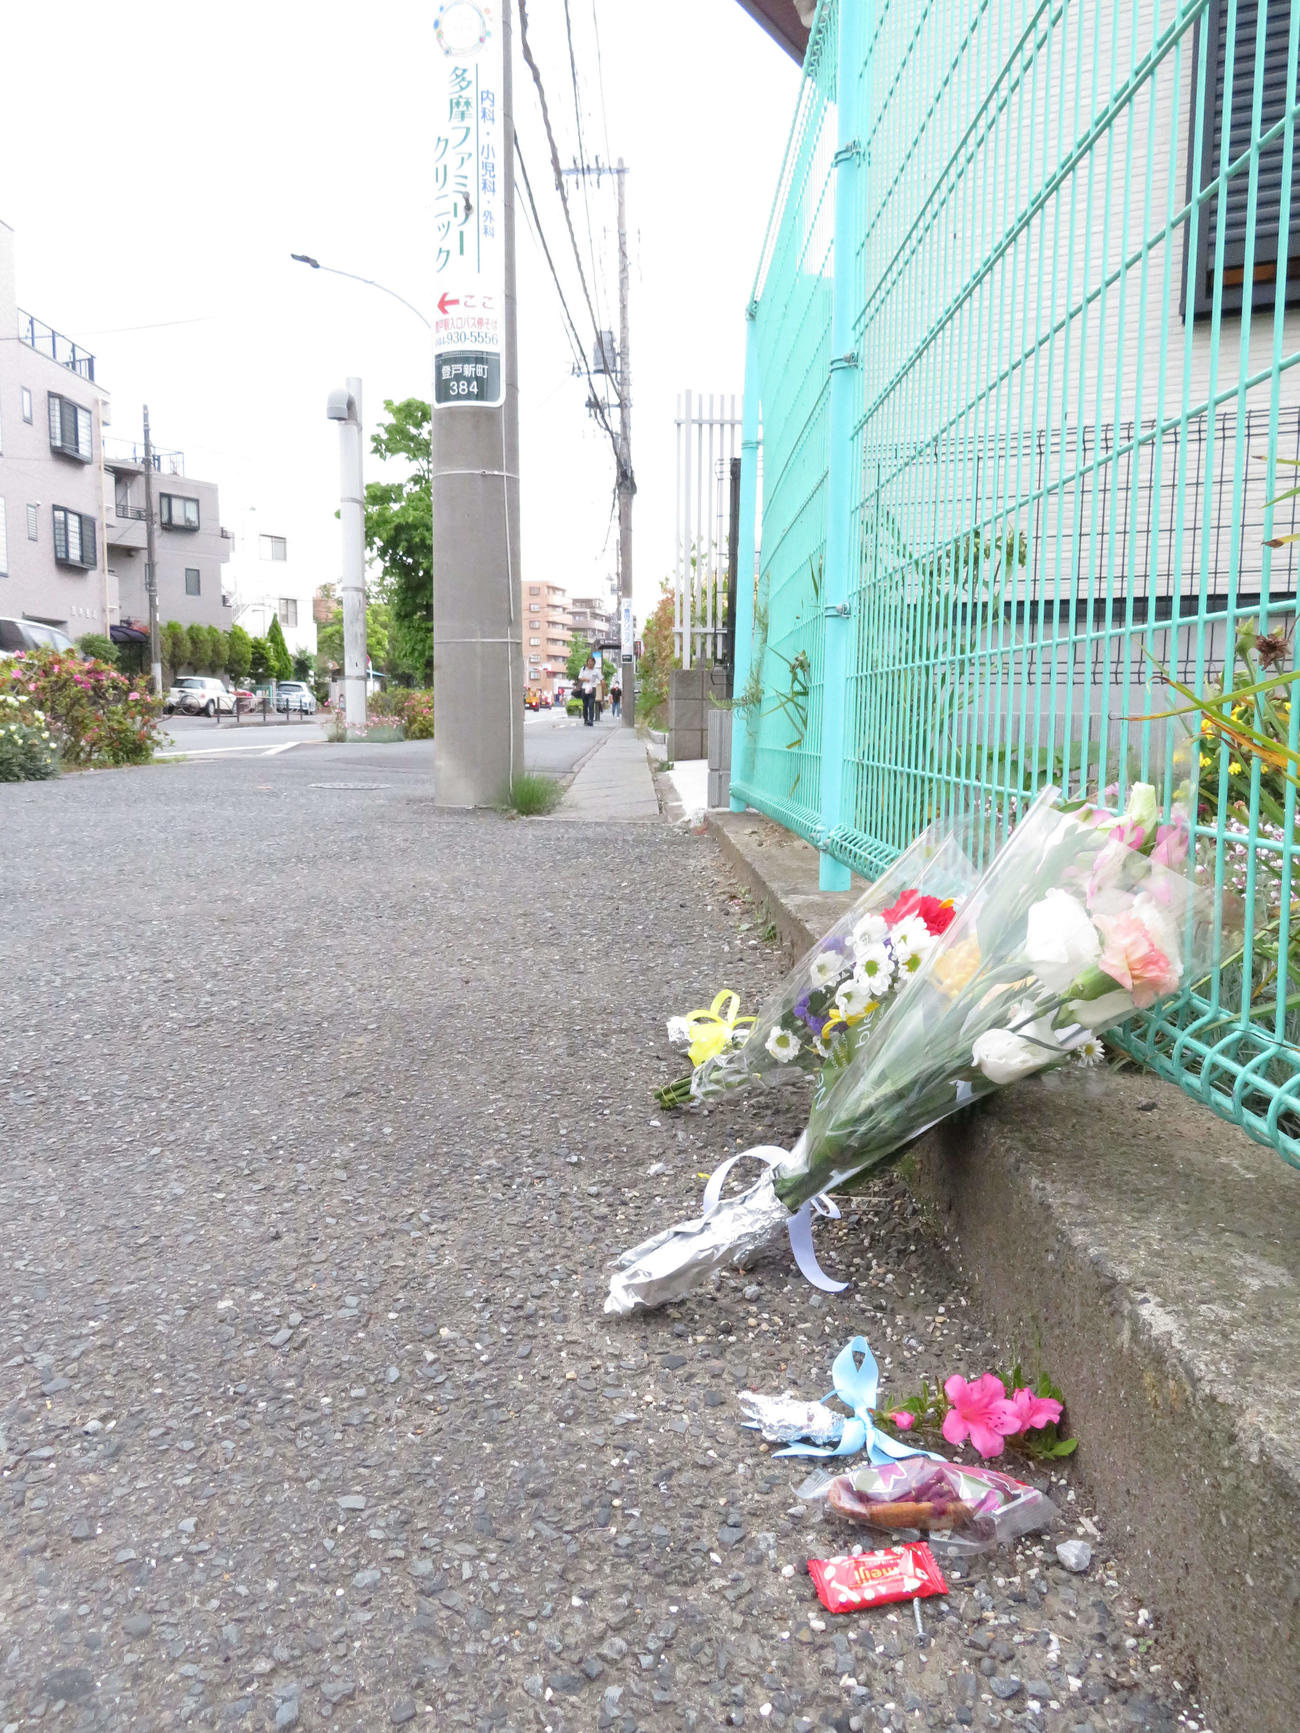 スクールバスを待っていた私立カリタス小の児童ら20人が殺傷された事件現場には、花やお菓子が供えられていた（撮影・近藤由美子）